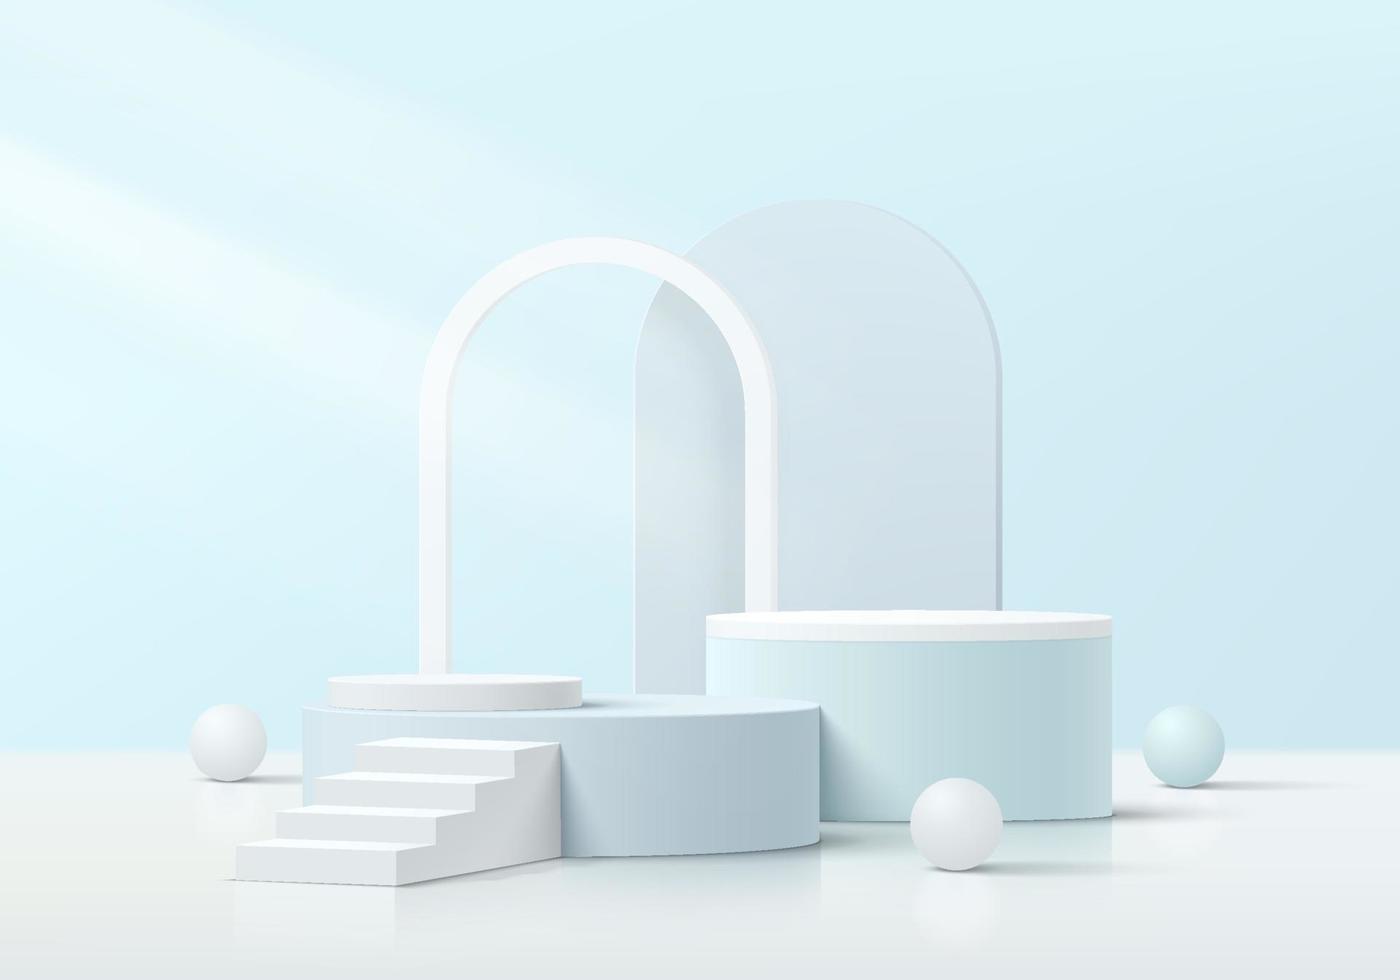 pódio de pedestal de cilindro azul e branco 3d realista com fundo de forma de escada, bolas e arco. cena mínima abstrata para vitrine de produtos, exibição de promoção. desenho de forma geométrica vetorial. vetor